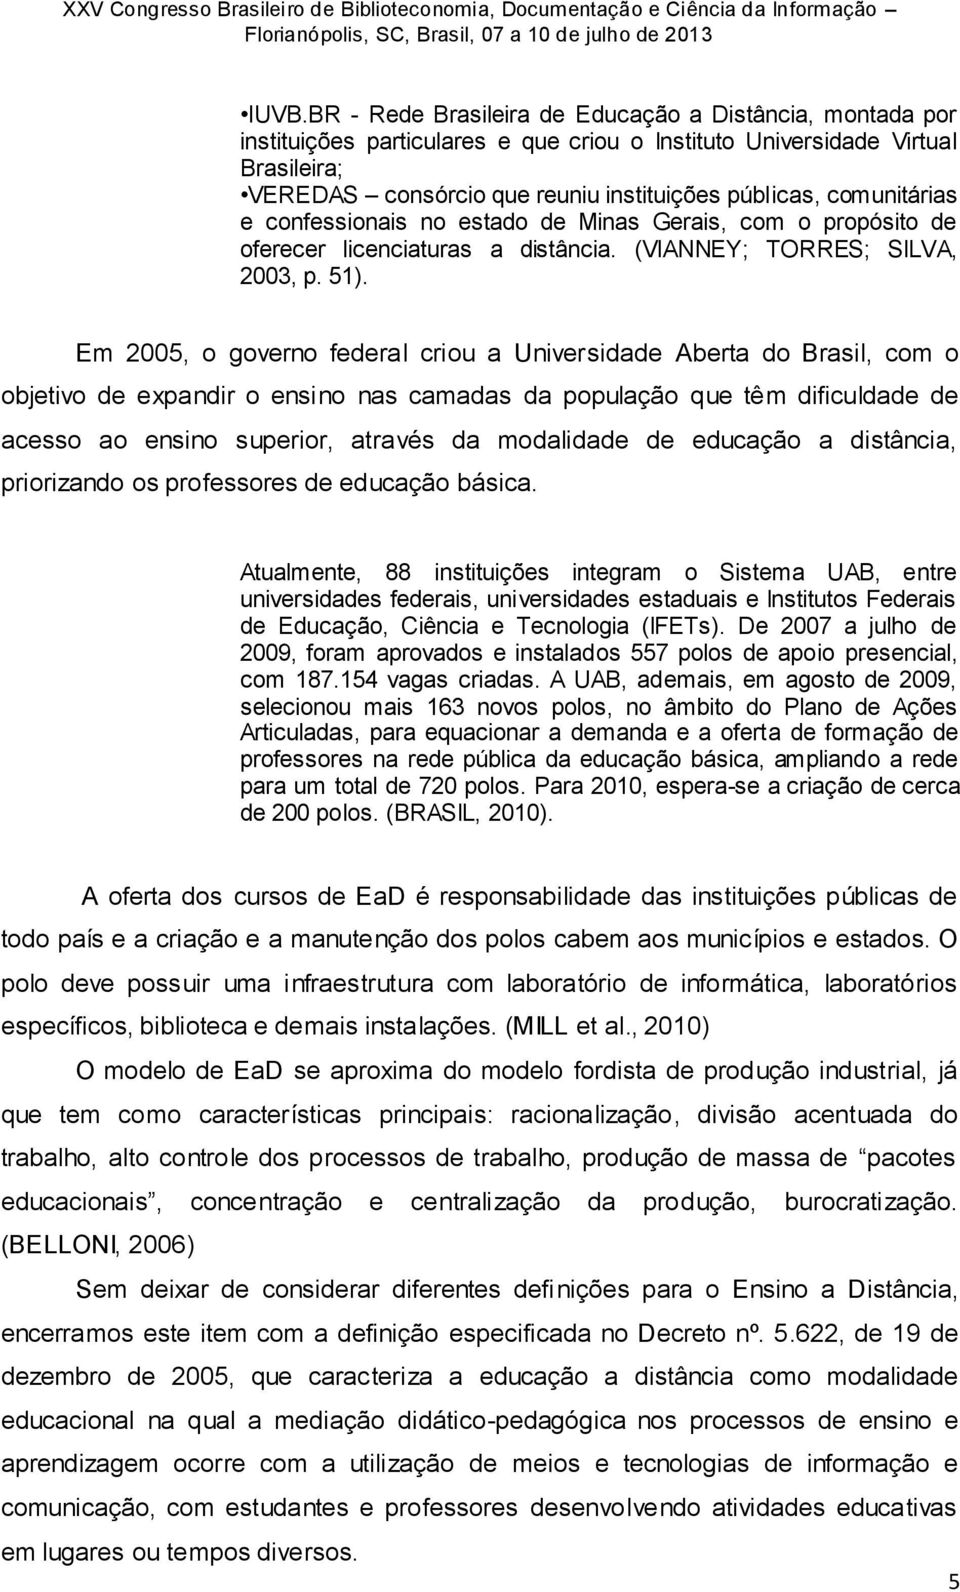 Em 2005, o governo federal criou a Universidade Aberta do Brasil, com o objetivo de expandir o ensino nas camadas da população que têm dificuldade de acesso ao ensino superior, através da modalidade